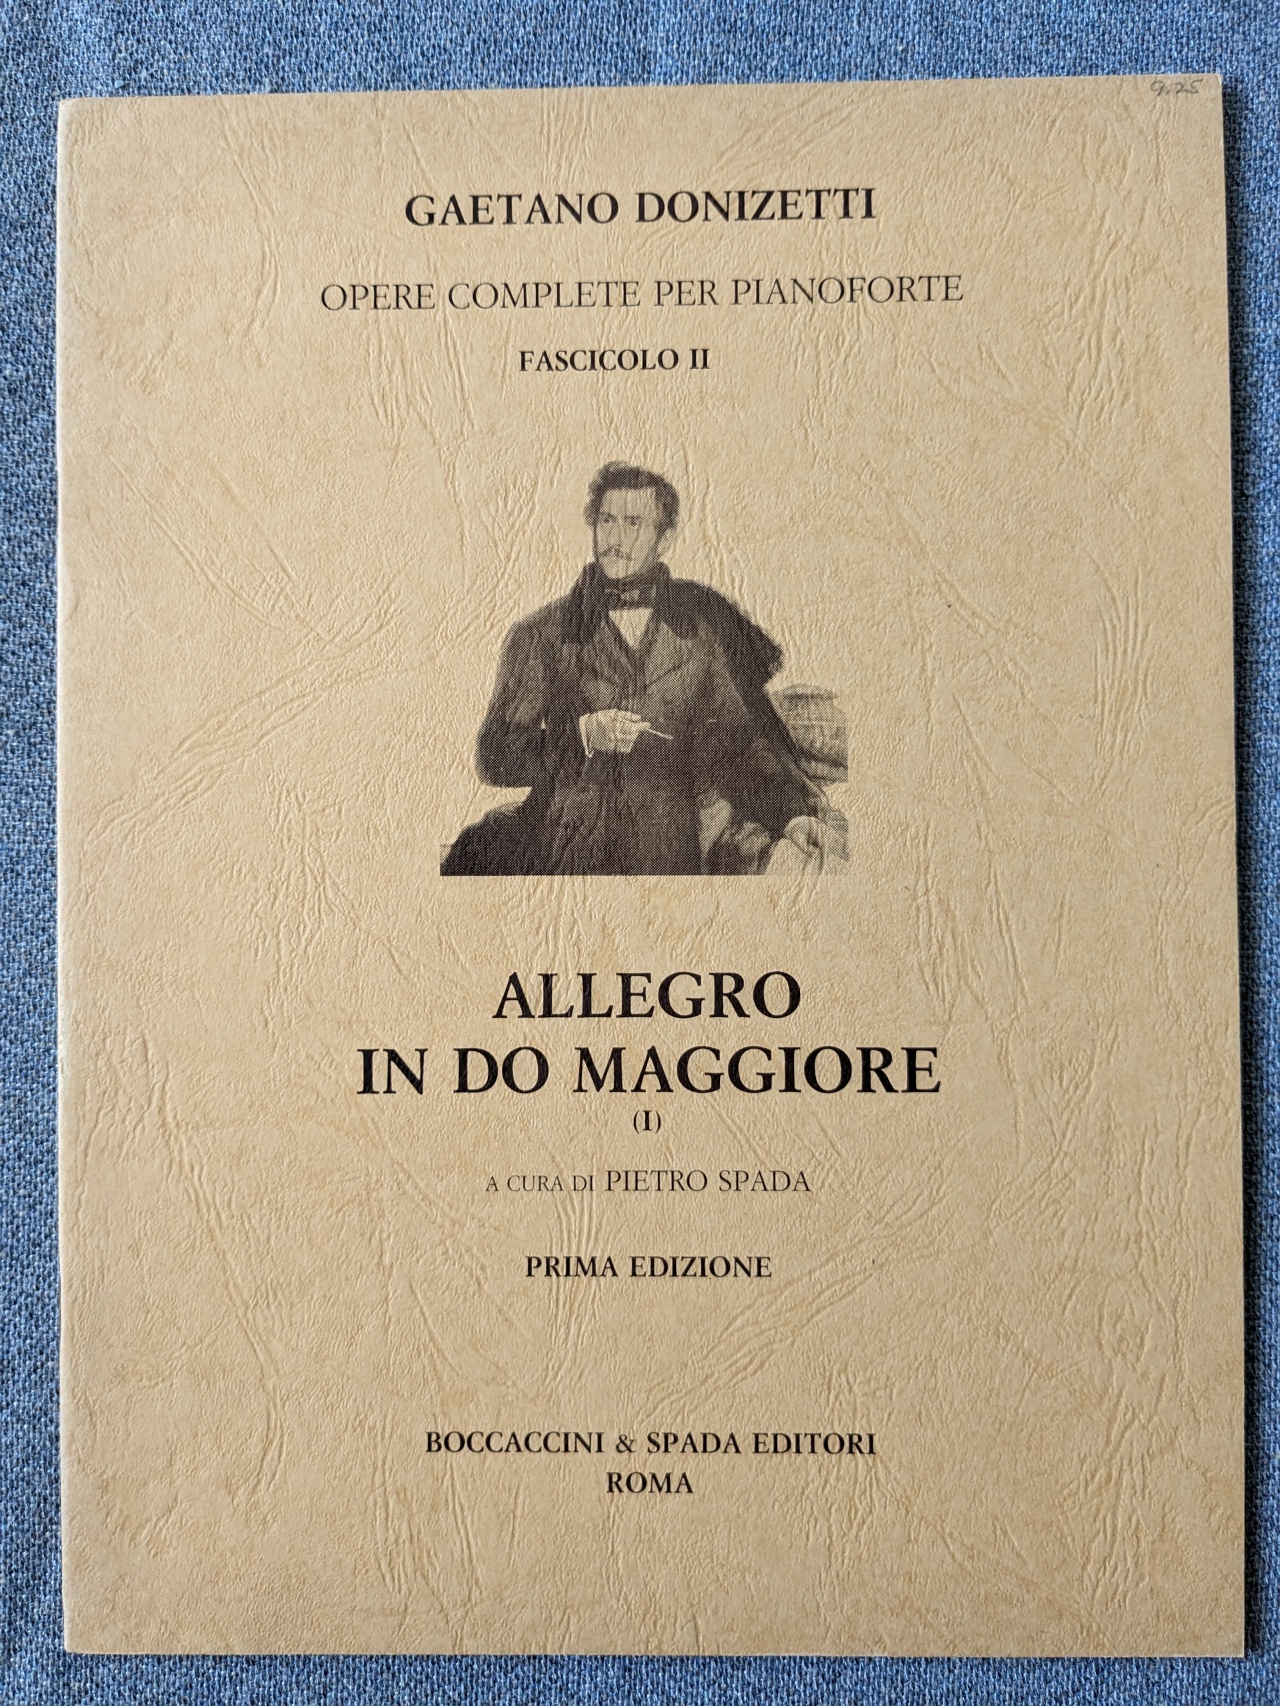 Gaetano Donizetti Allegro Do Maggiore C Major Pietro Spada - Click Image to Close